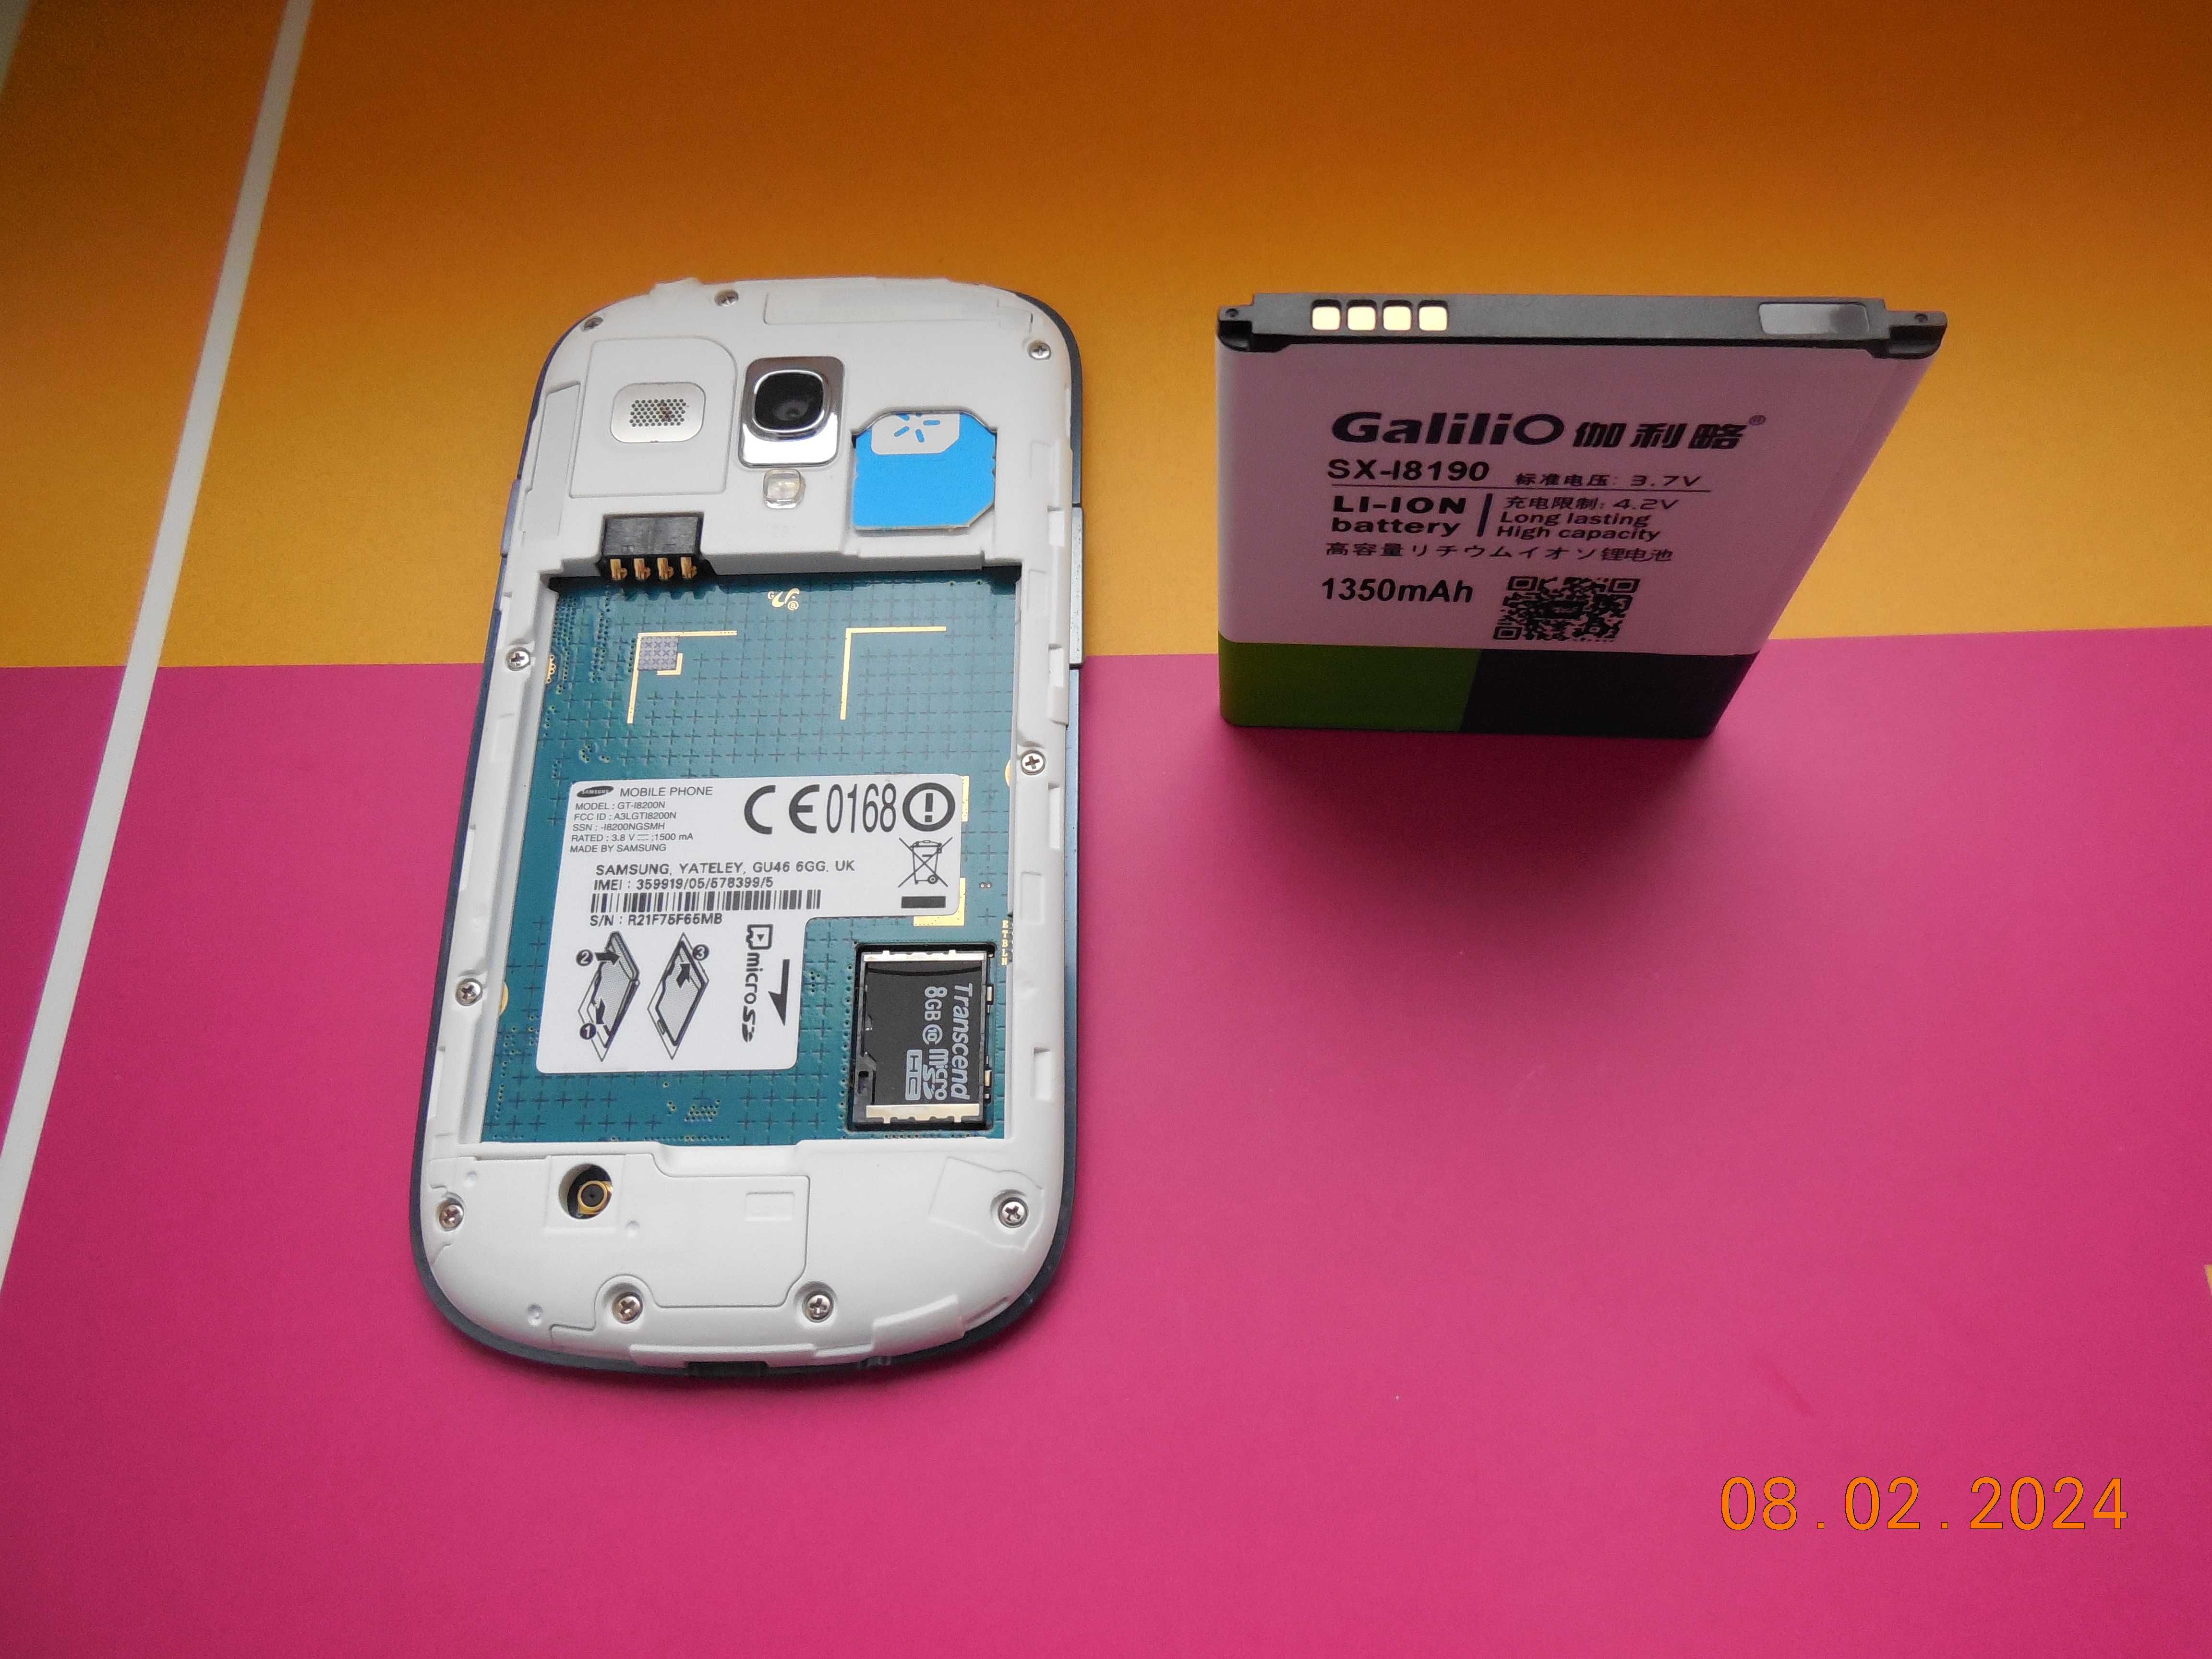 Samsung Galaxy S III mini I8190, Galaxy S3 mini